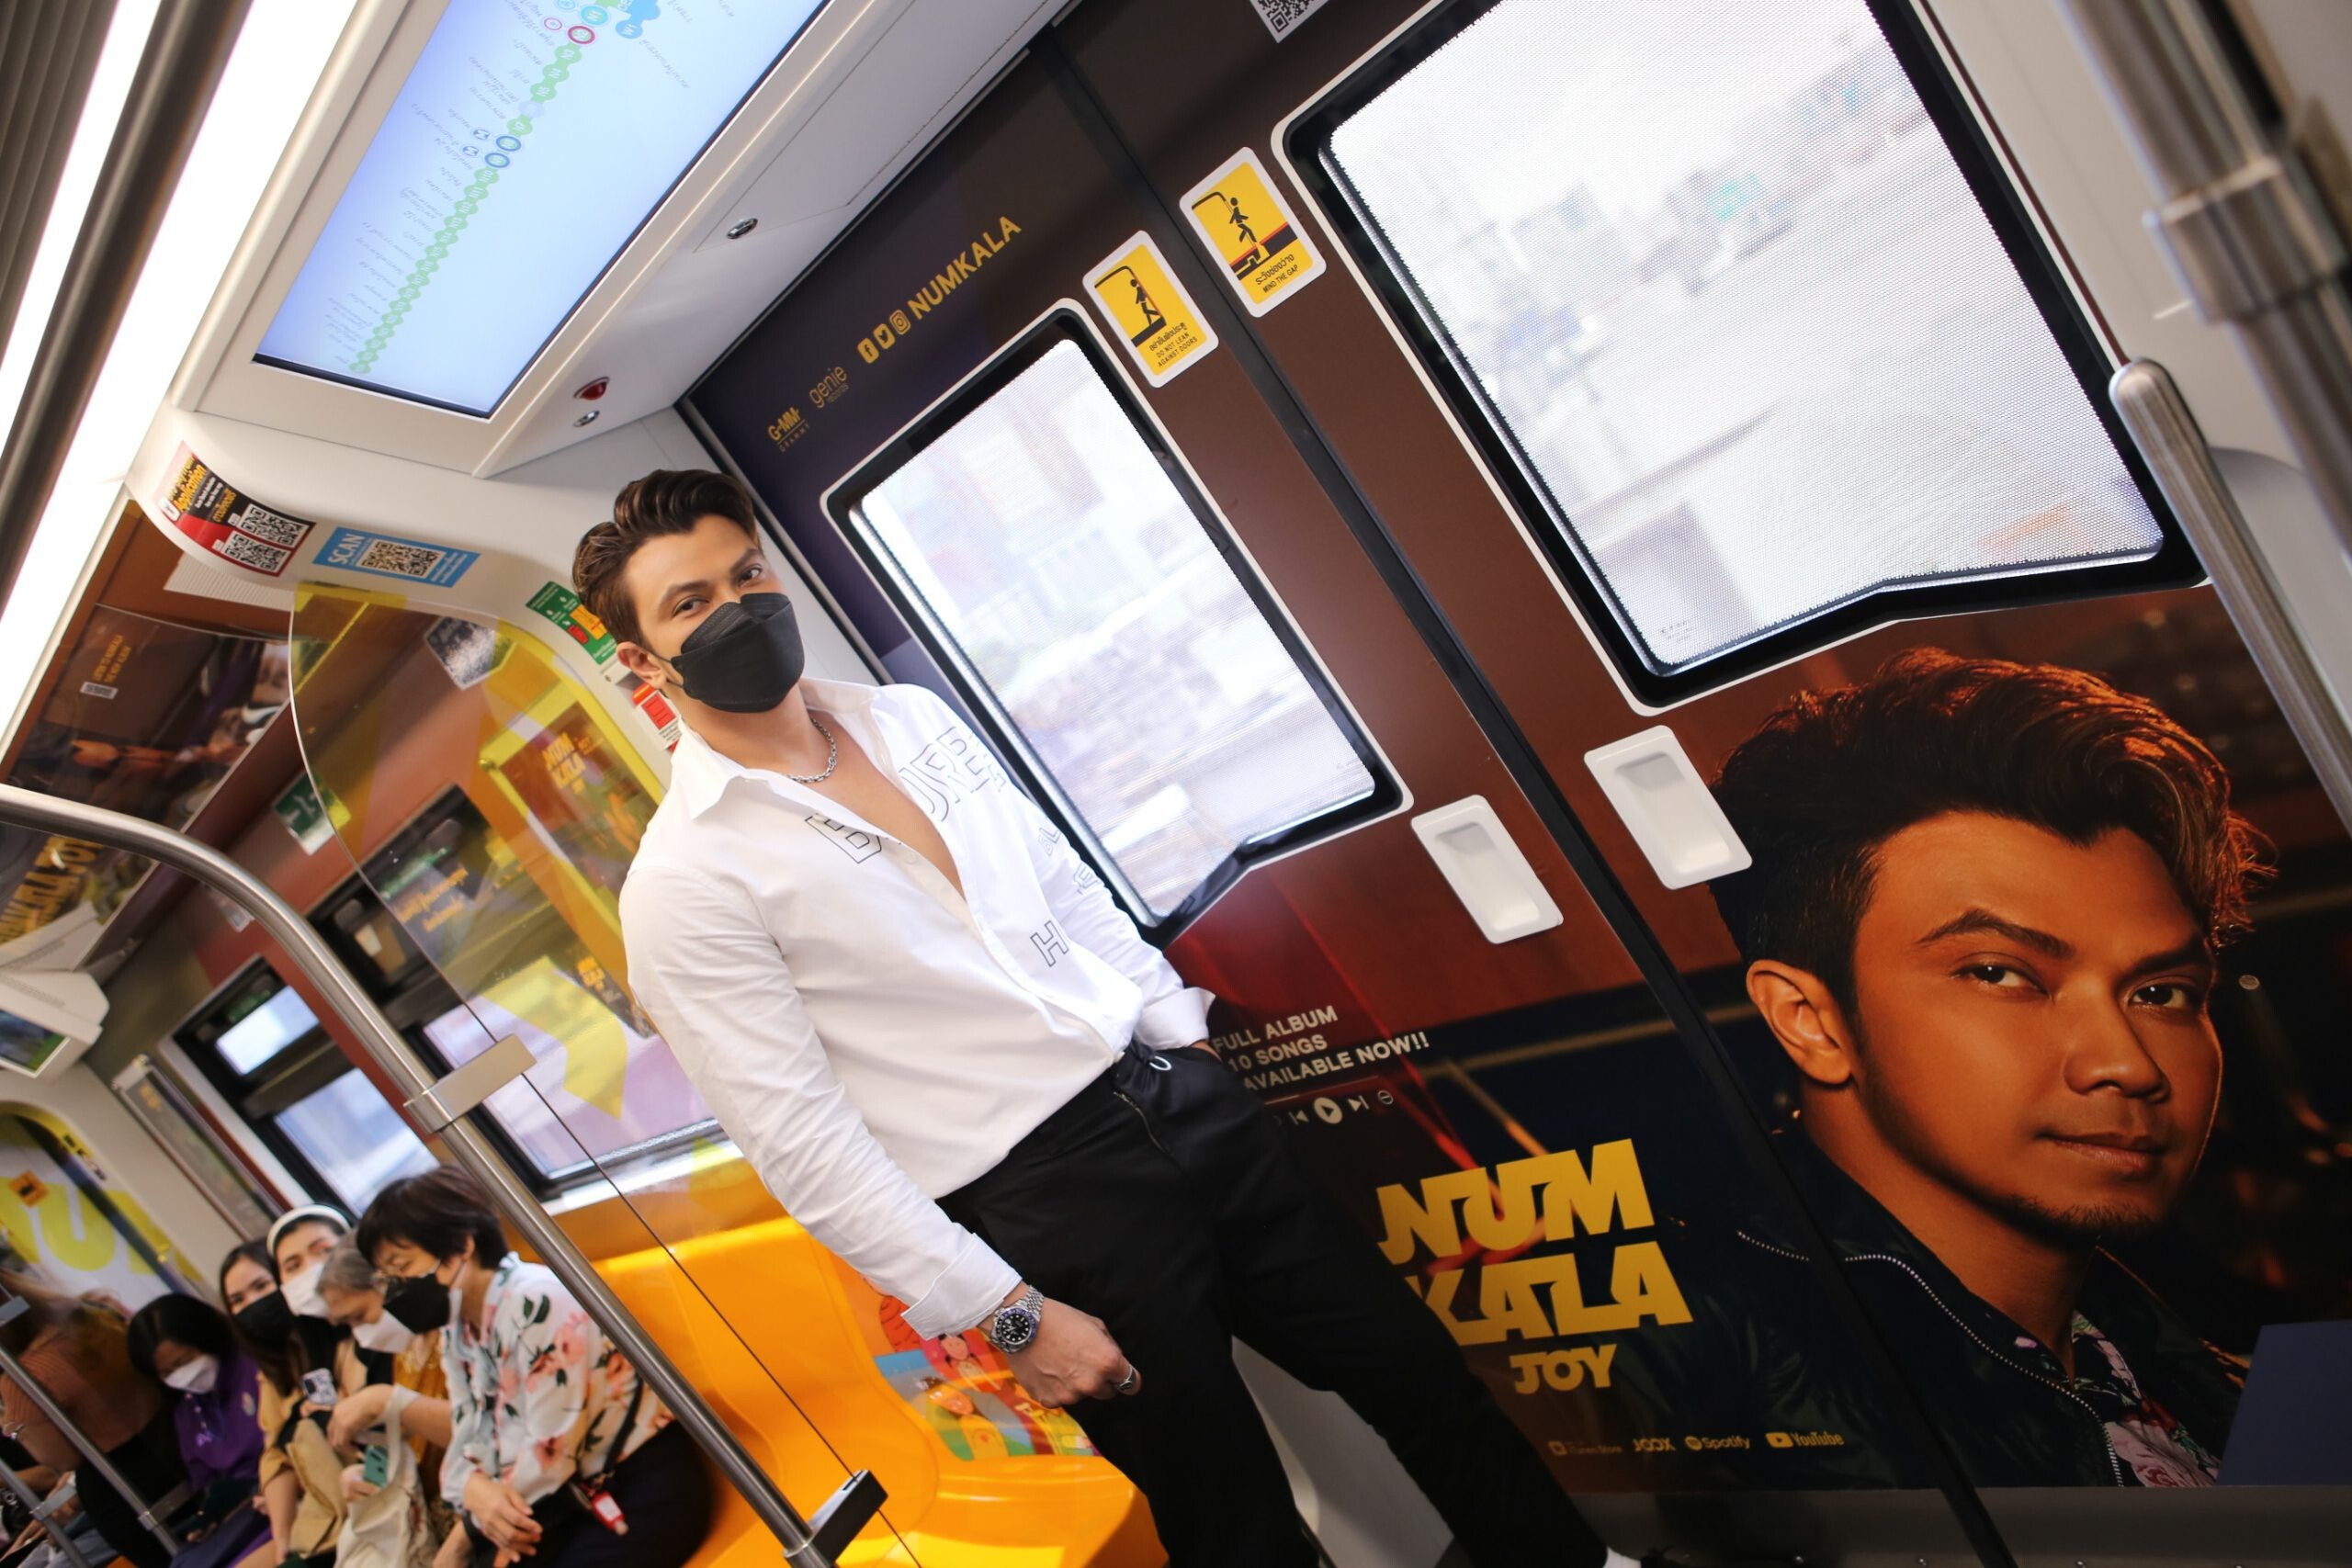 VGI X GMM GRAMMY ส่งกำลังใจผ่านขบวนรถไฟฟ้า ช่วยสร้างพลังแห่งความหวัง ด้วยศิลปินร็อกในดวงใจคนไทย "หนุ่ม กะลา"